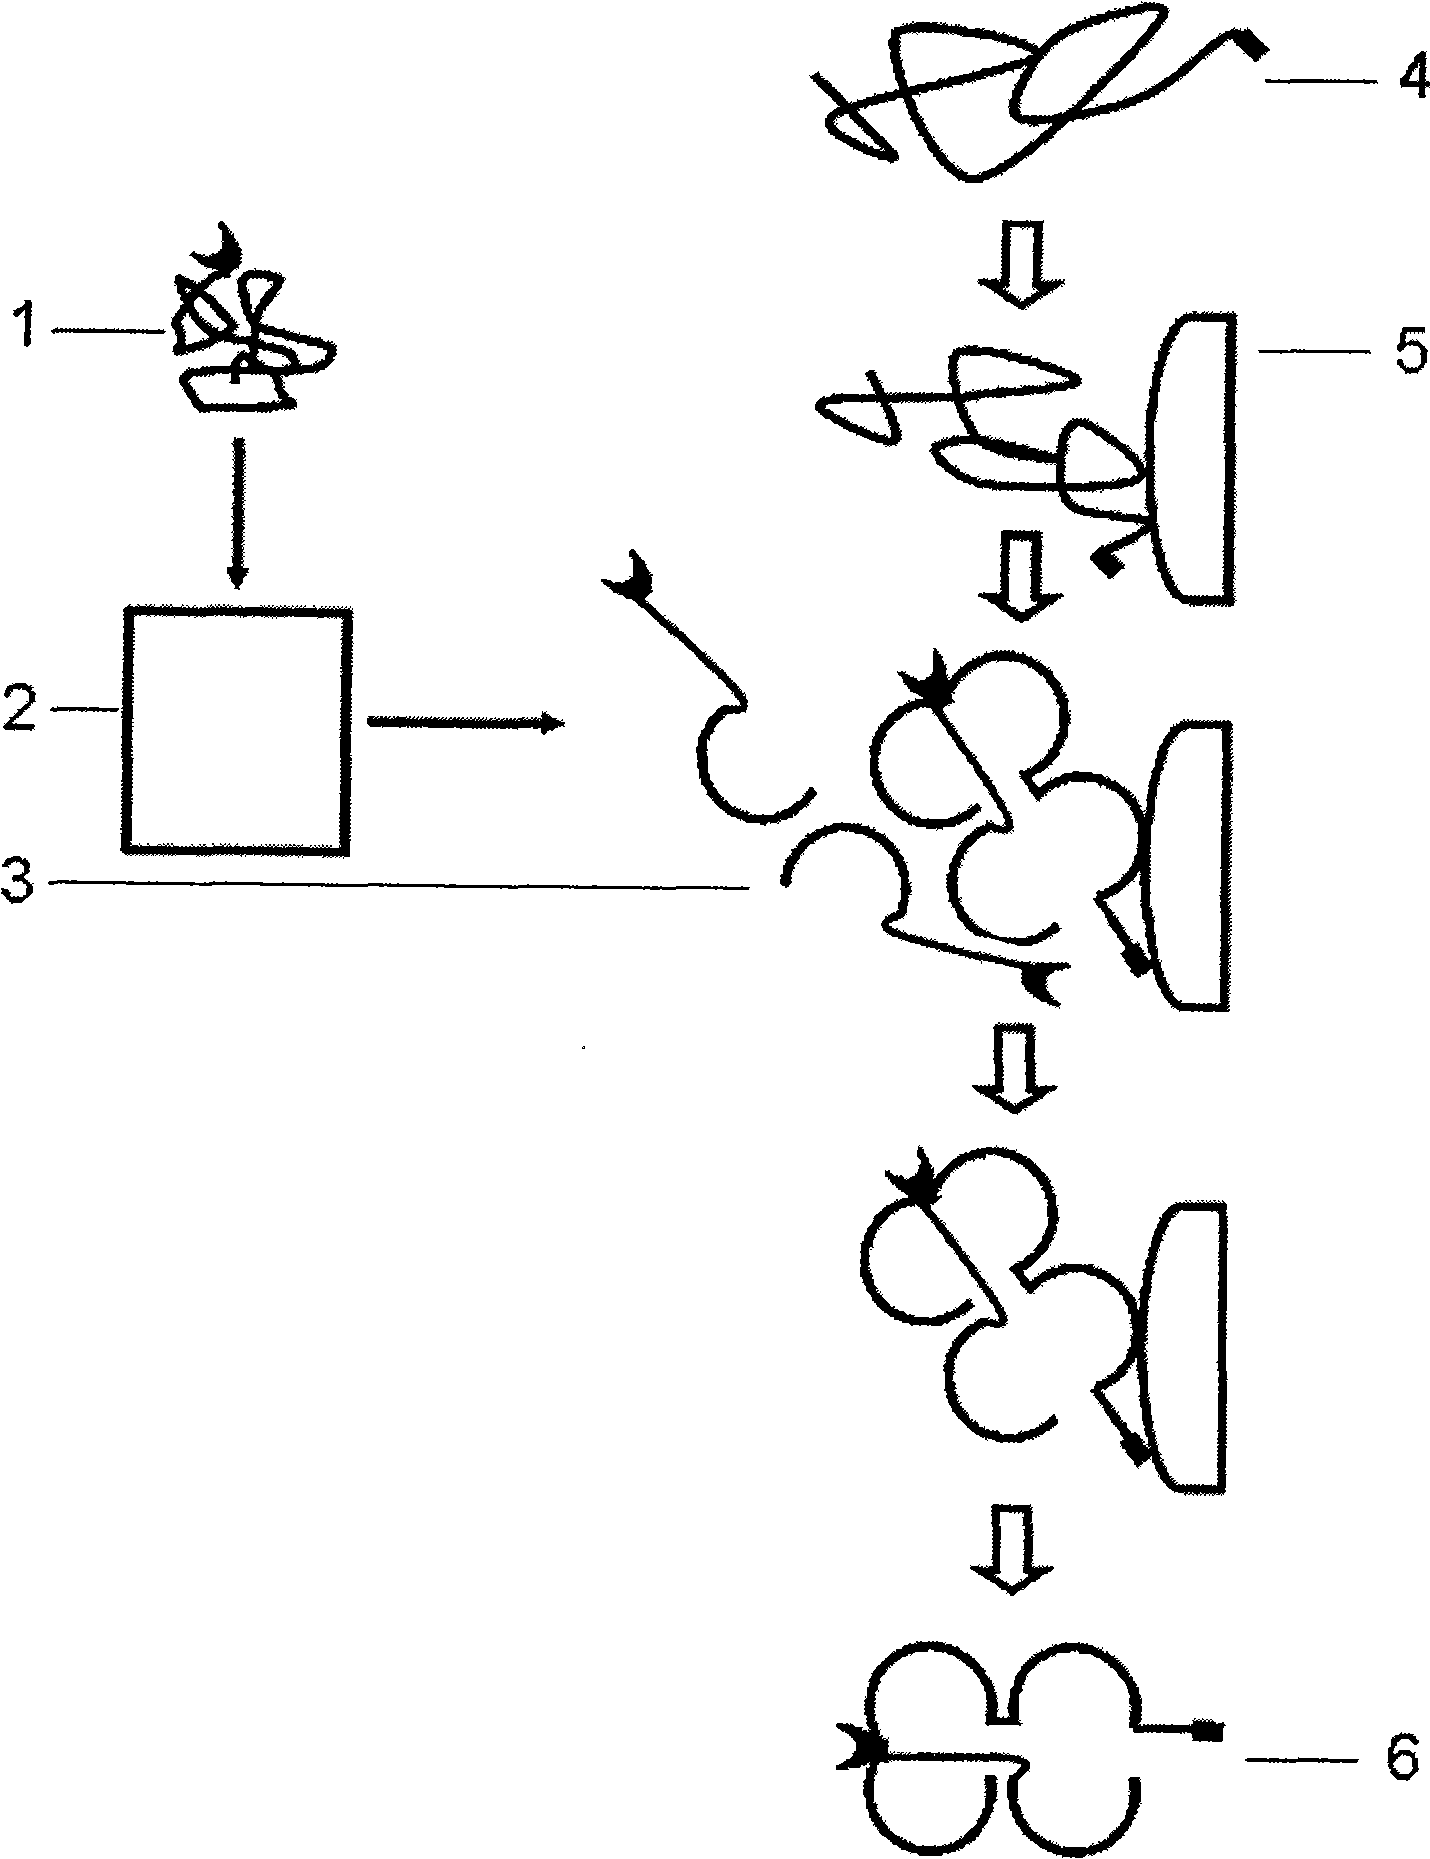 Multi-subunit protein renaturation method